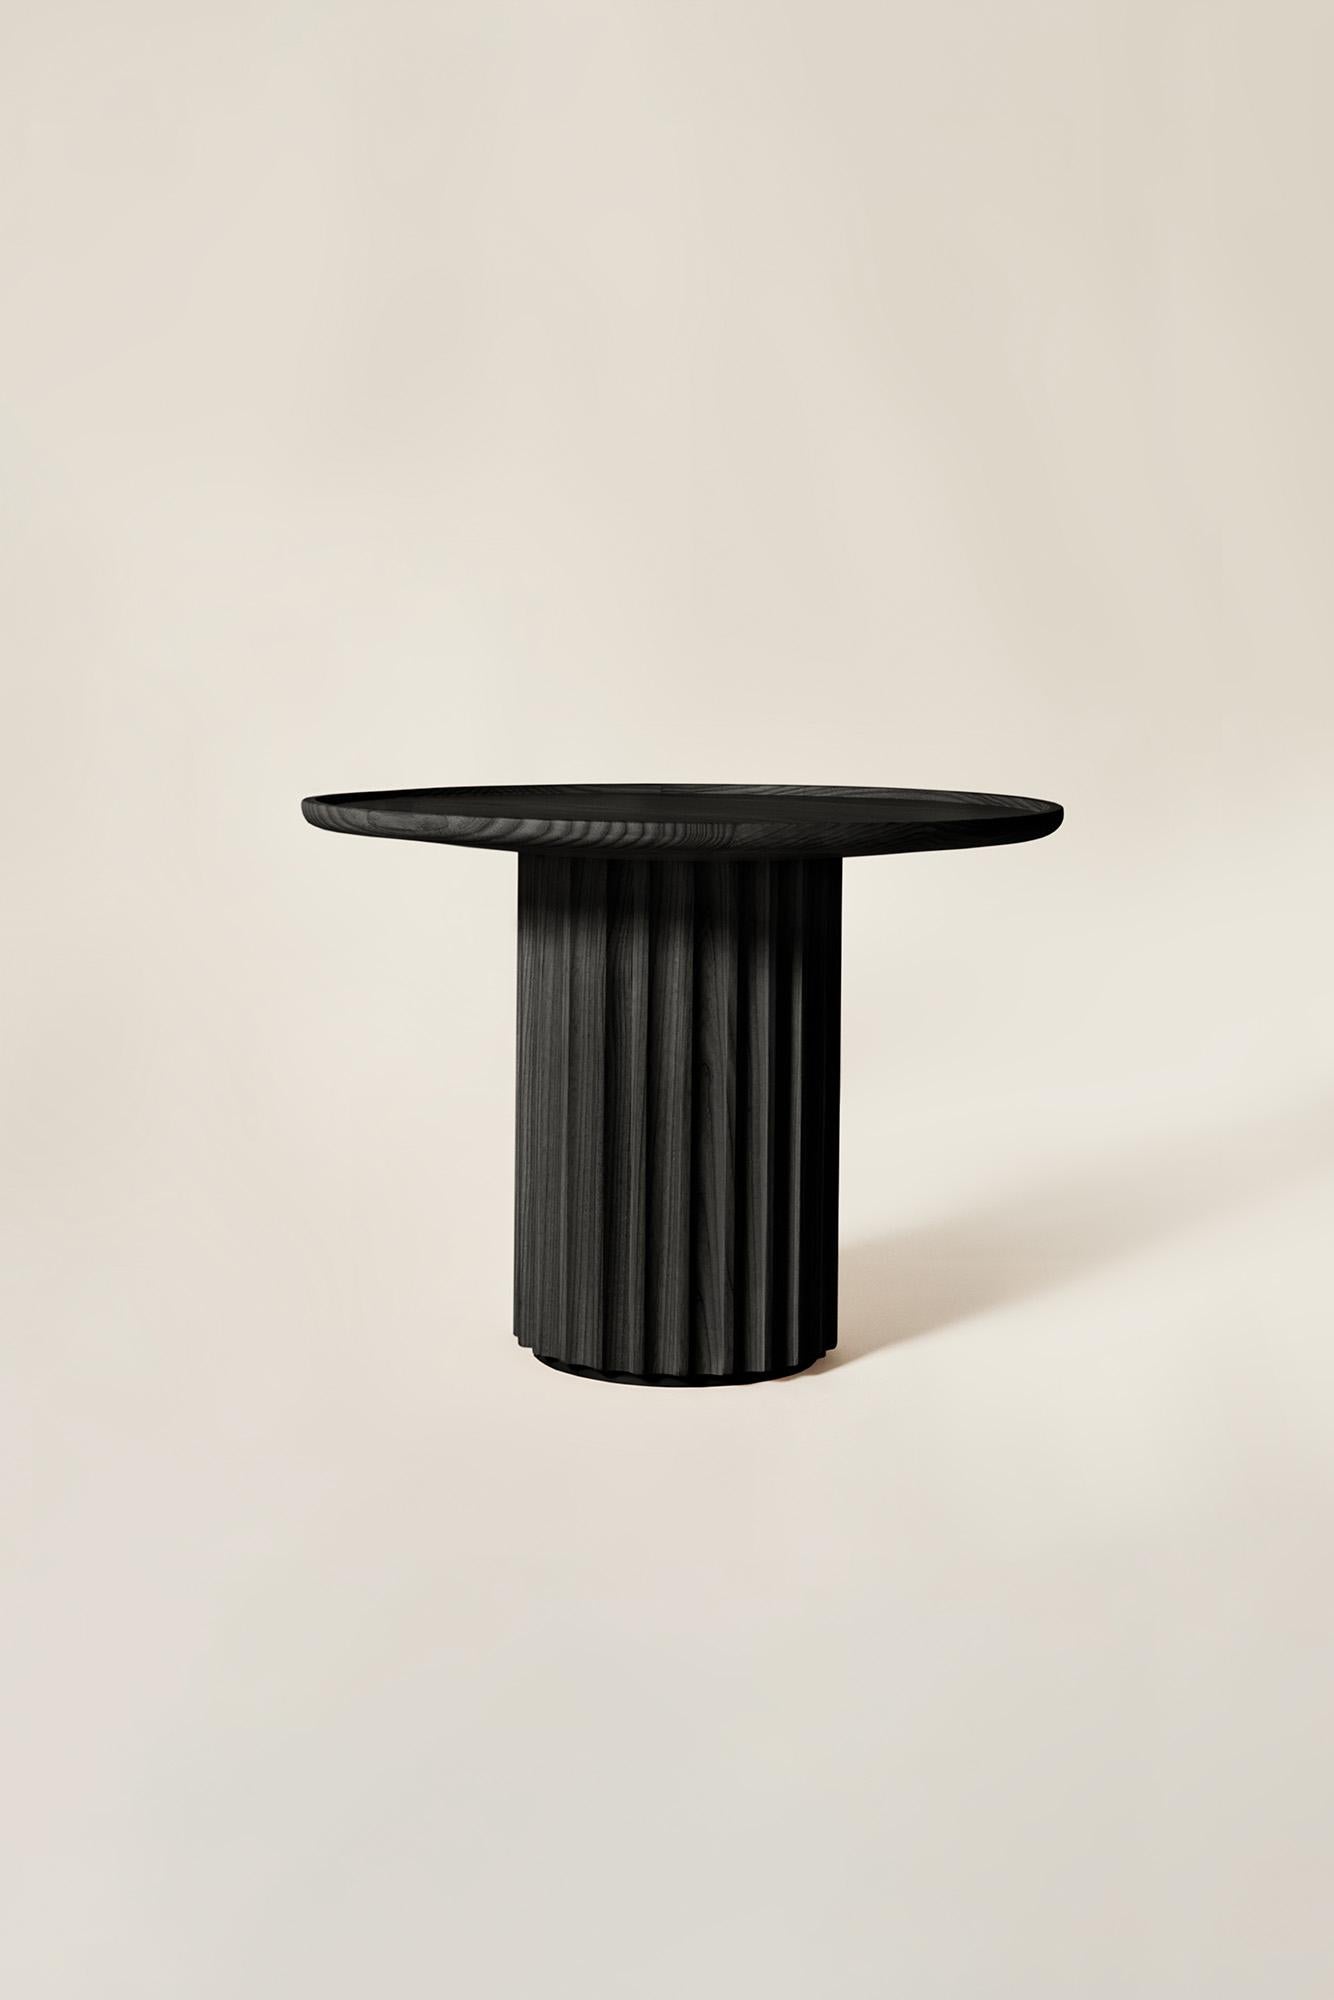 Moderne Table basse Capitello en bois massif, finition frêne noir, contemporaine en vente